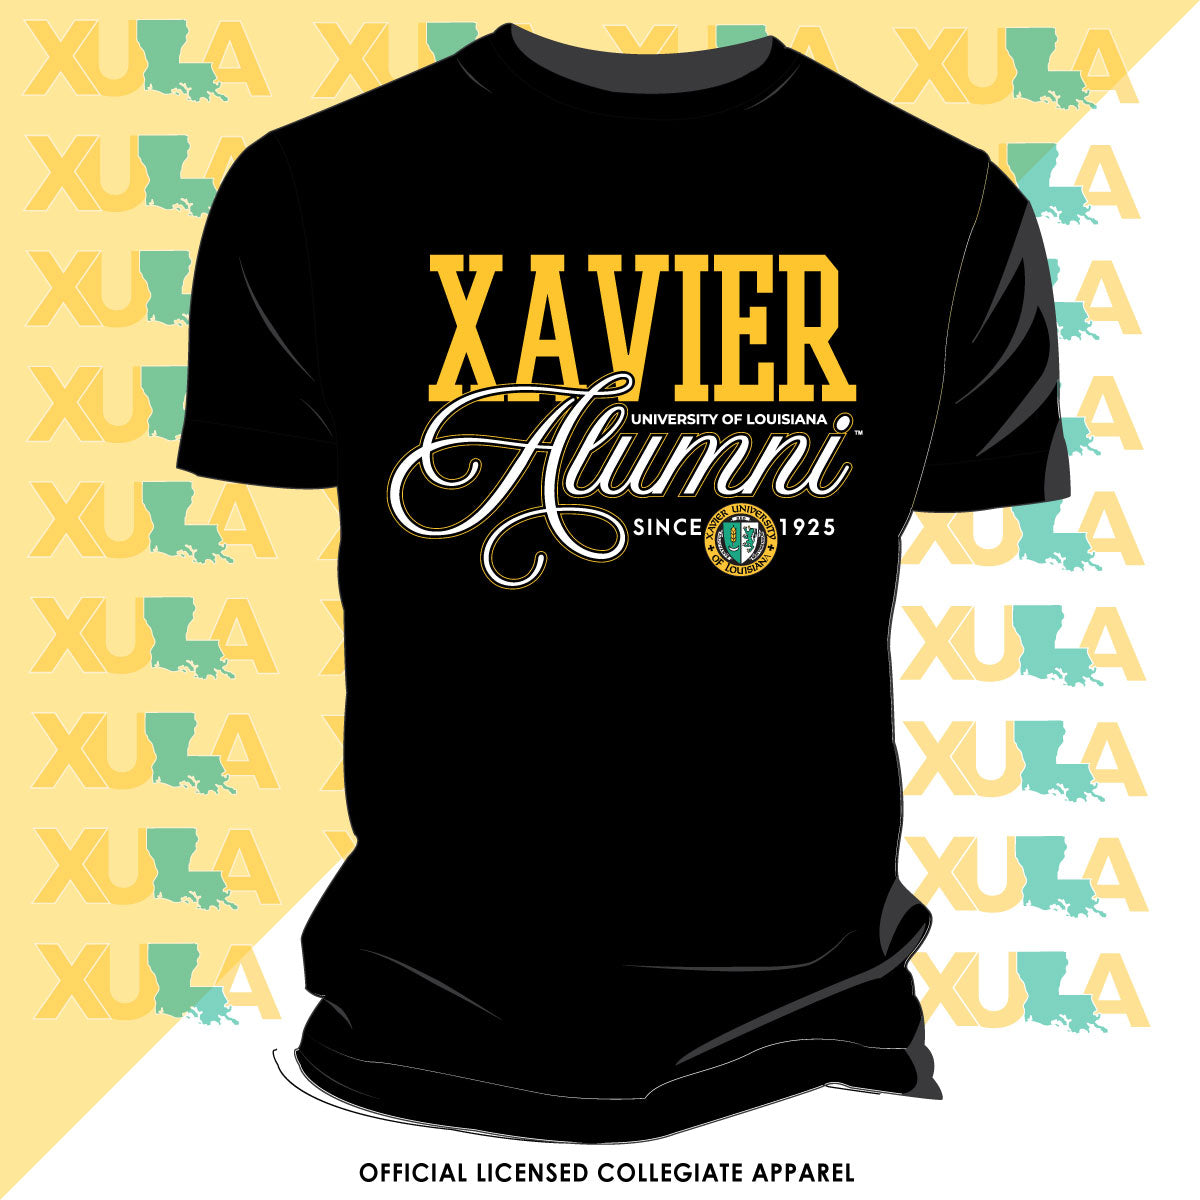 White/Blue Louisiana Xavier University Varsity Satin Jacket - Jacket Makers